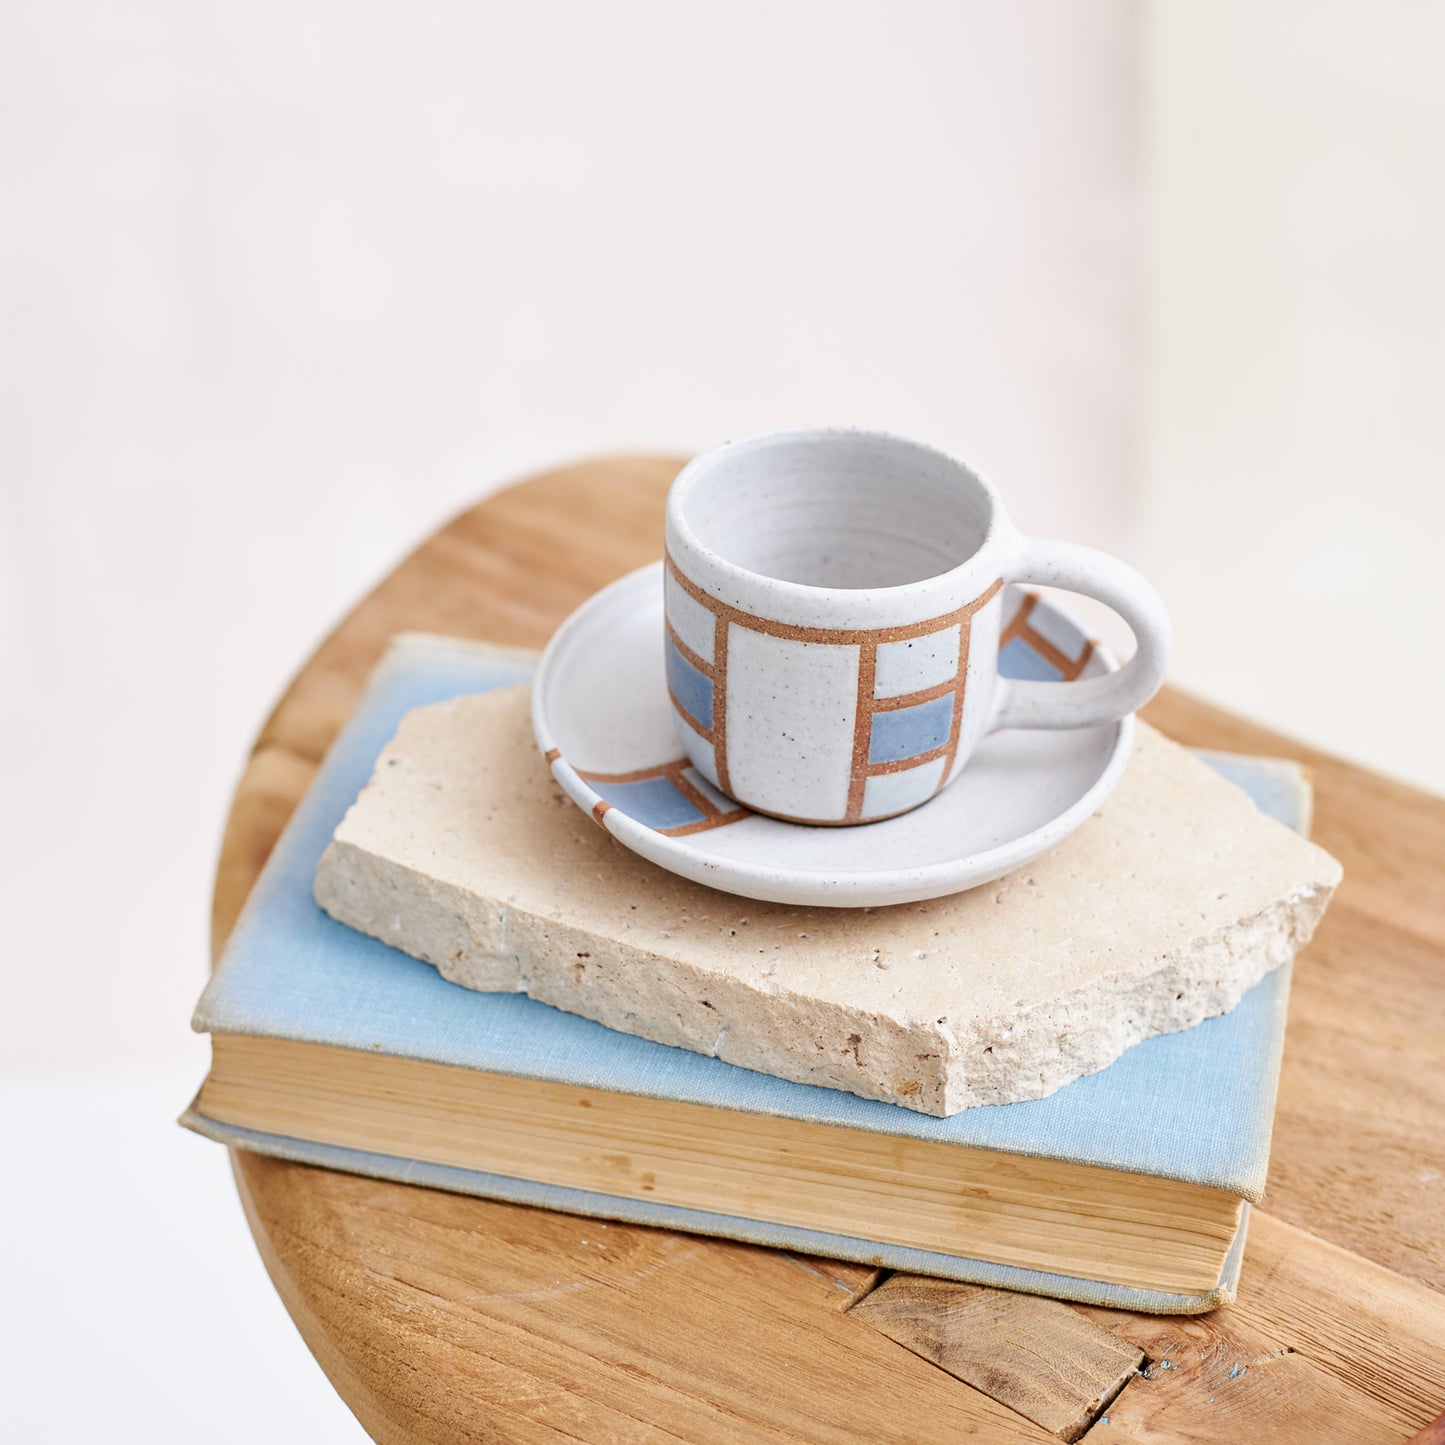 Geometric Handmade Ceramic Espresso Saucer - Blue and Grey